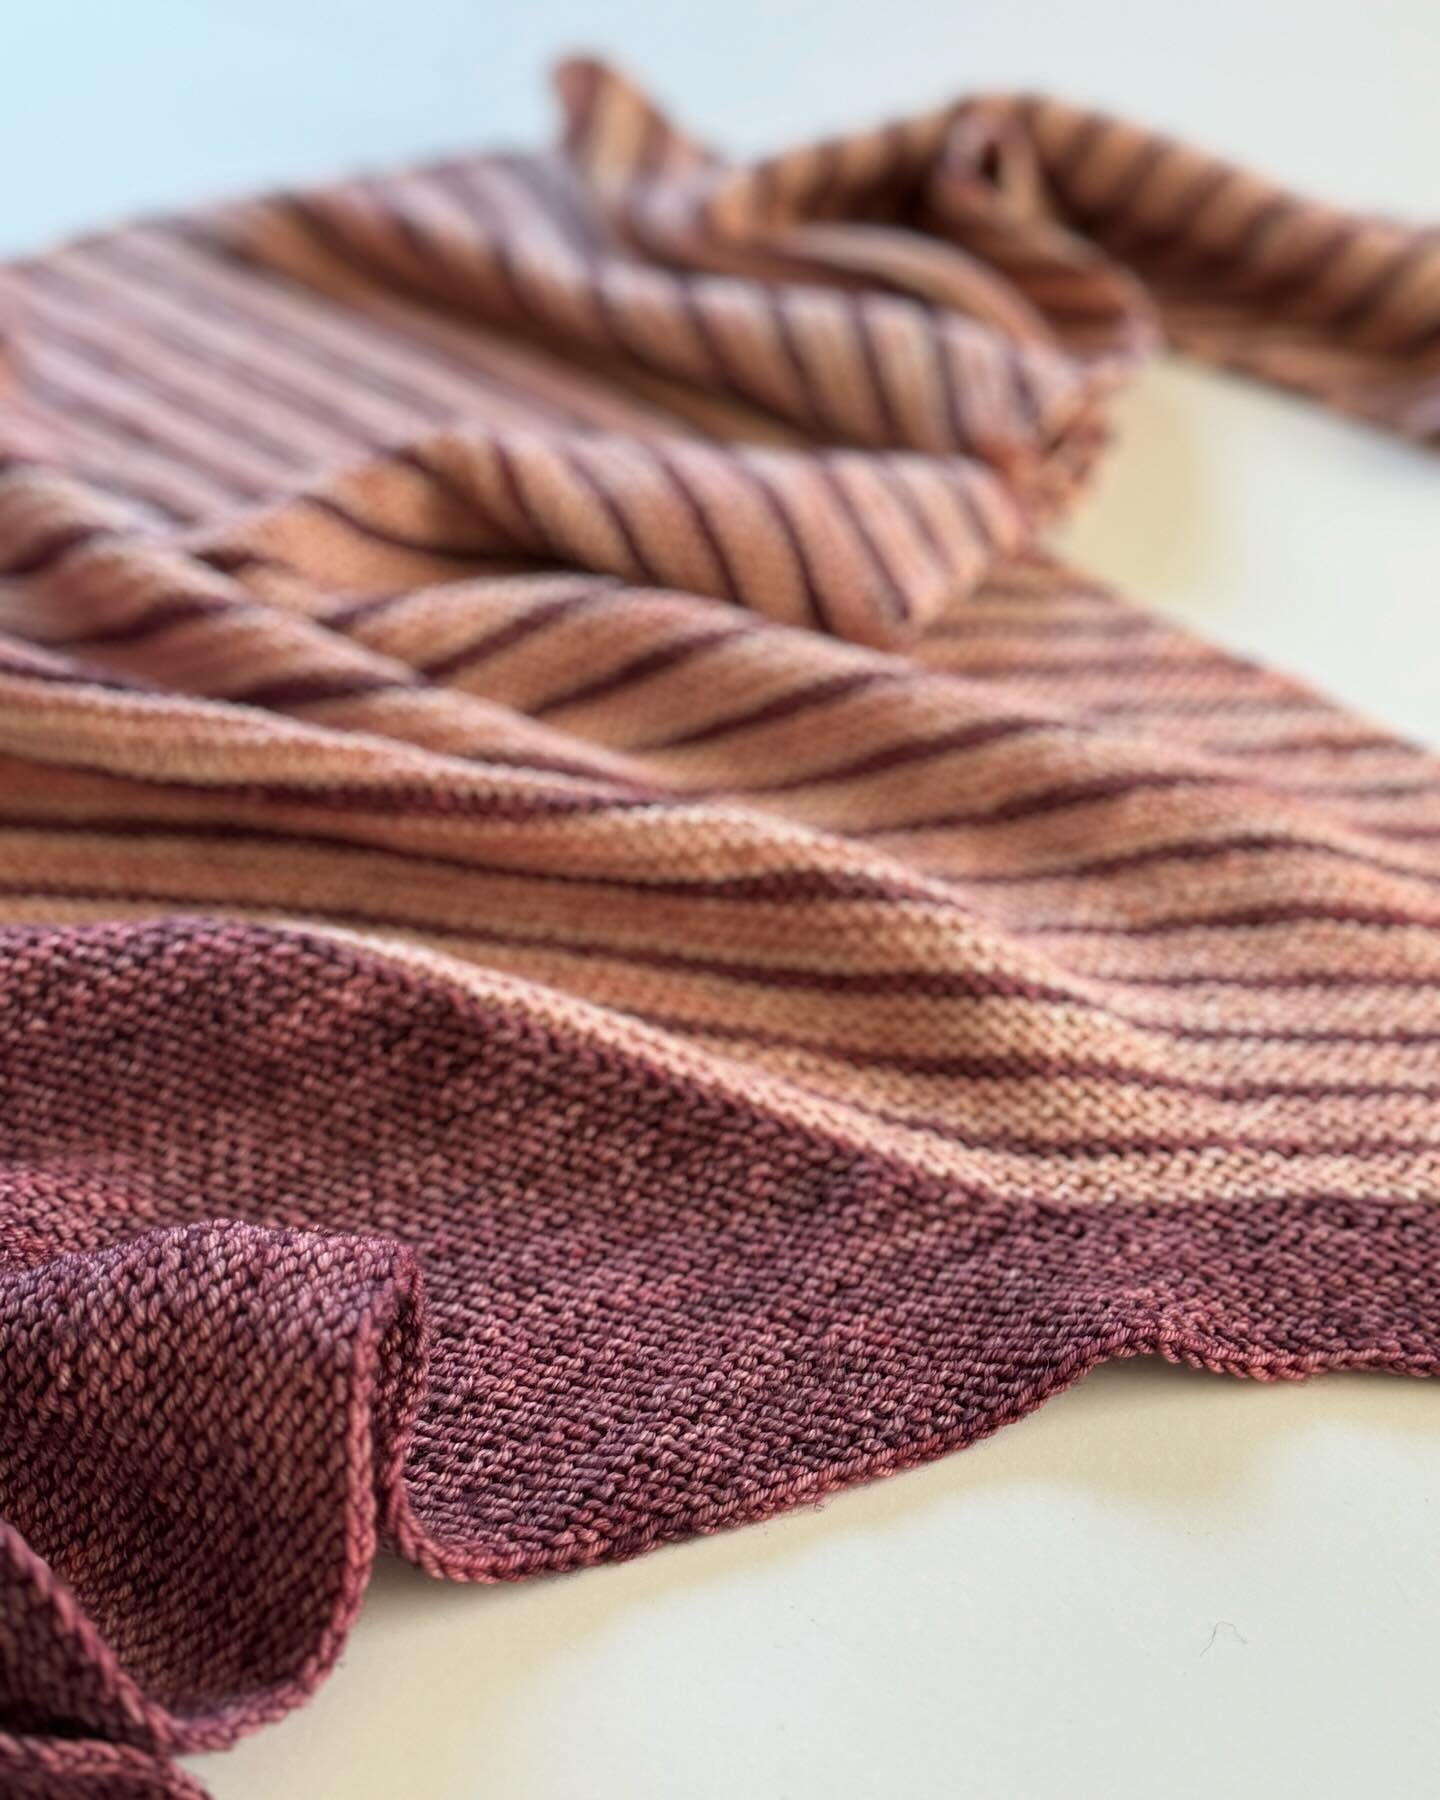 Trekkie Shawl is now available on #etsy! #thepublicknitter #knittersofinstagram #indieknitter https://publicknitter.etsy.com/listing/1674308000